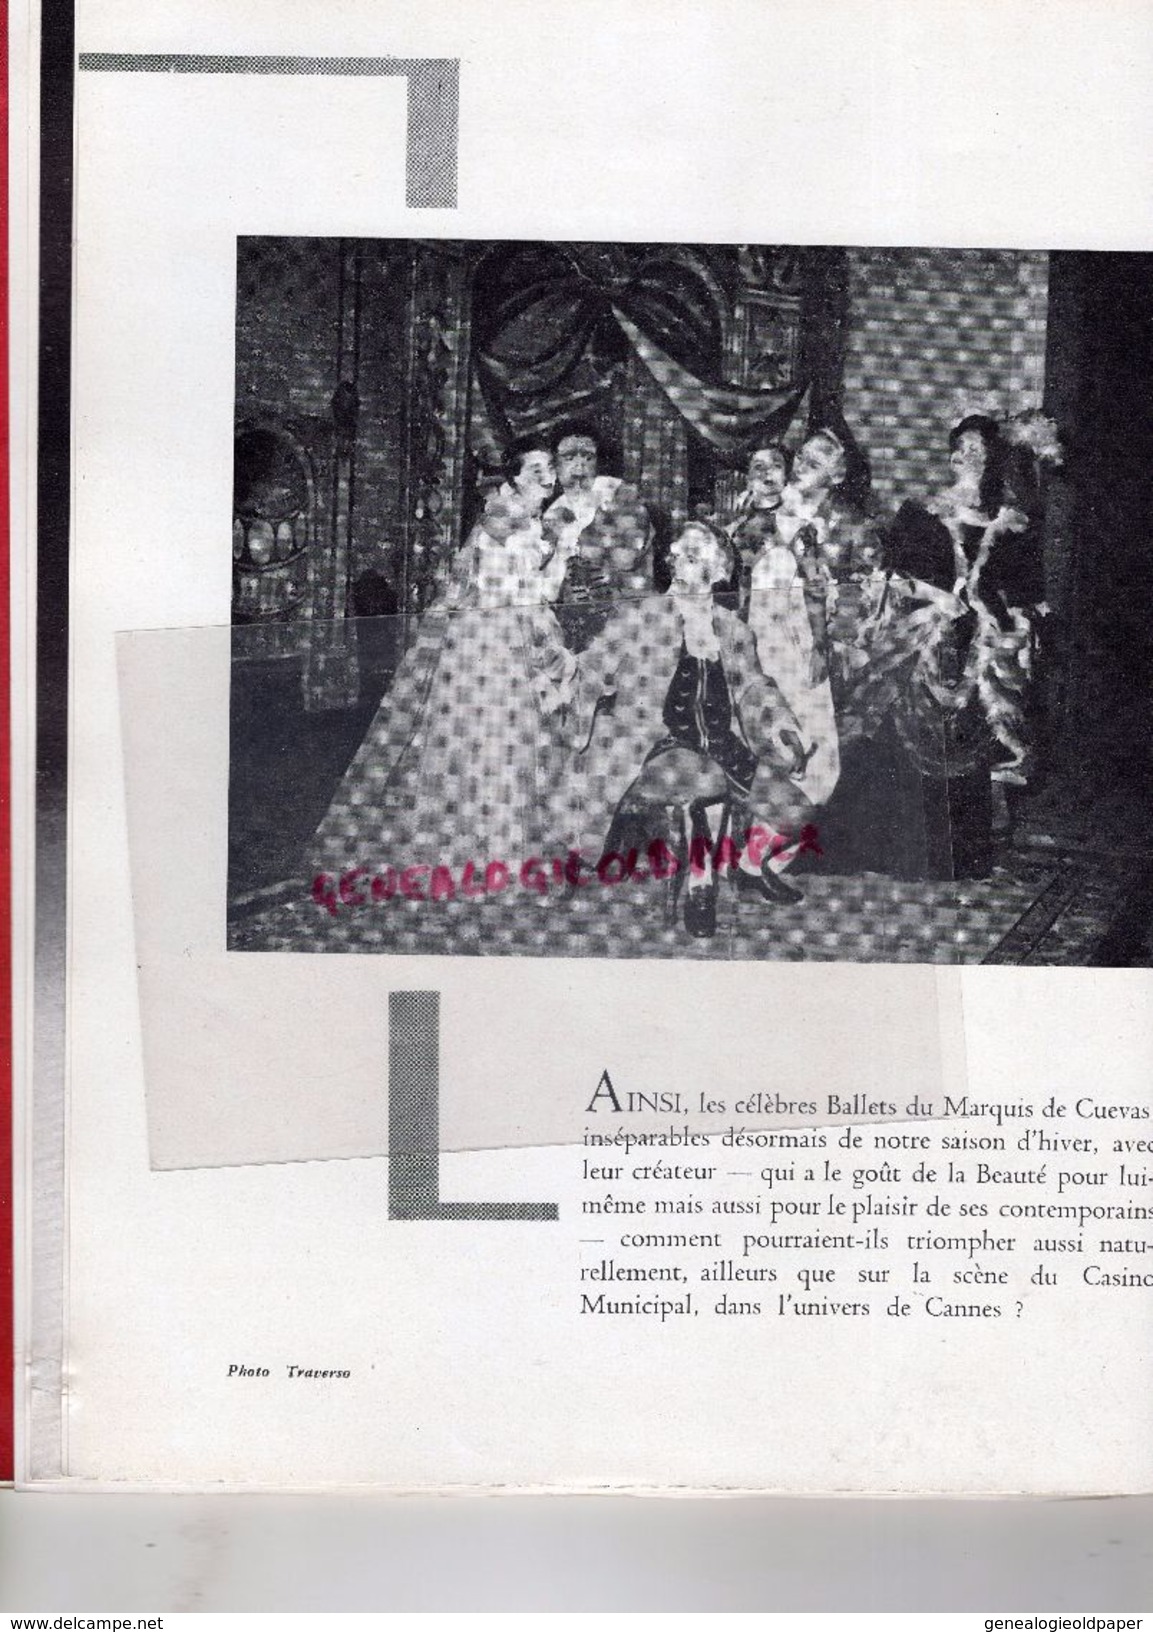 06- CANNES- RARE PROGRAMME CASINO MUNICIPAL--MARCEL HUET-FRENCH LINE-31 DEC.1958-1E JANVIER 1959-MARQUIS CUEVAS-LIFAR-